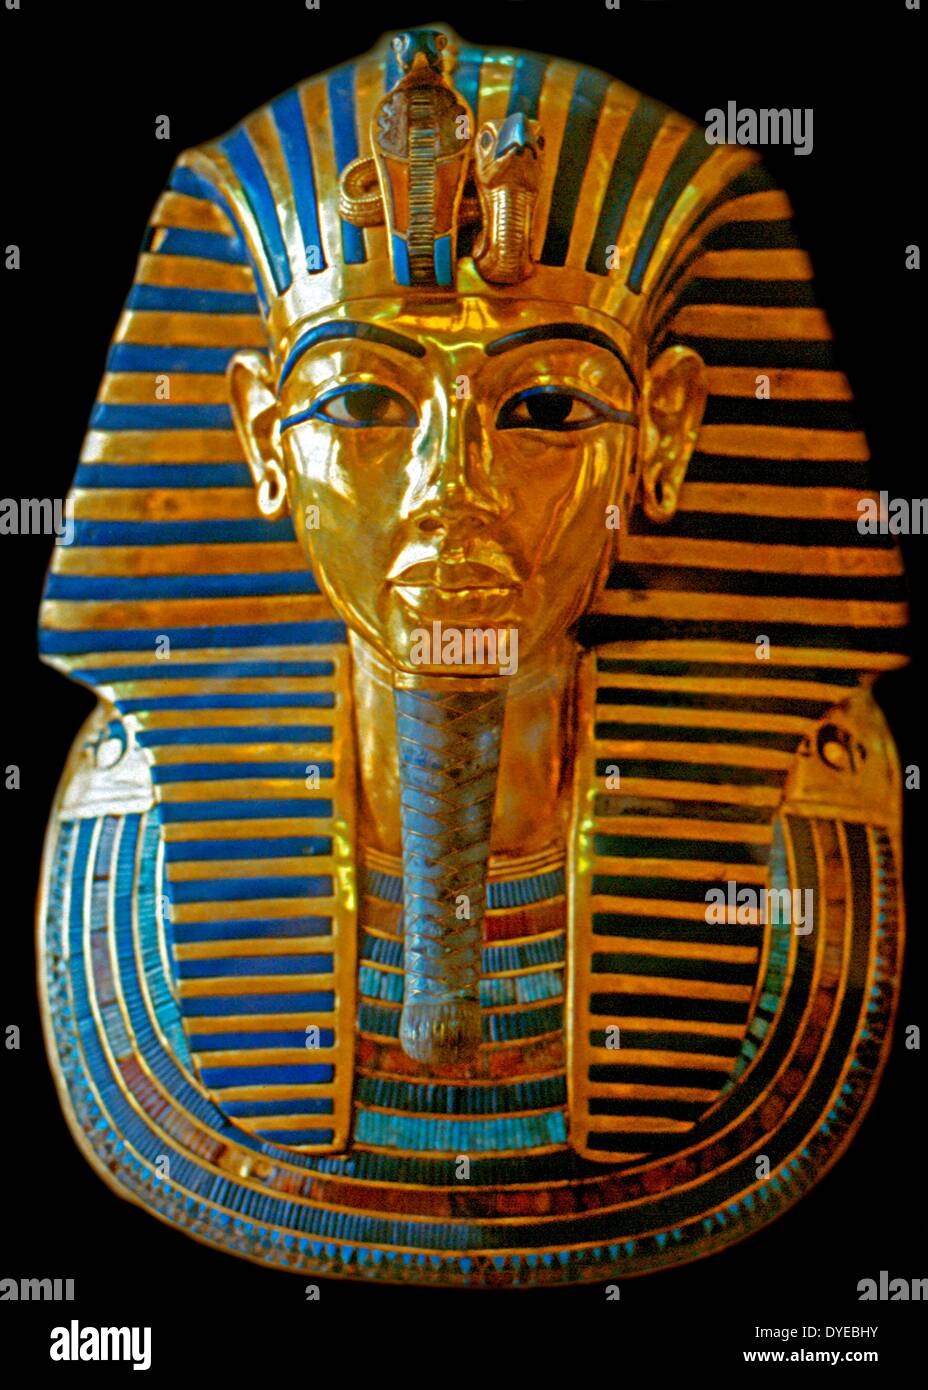 Maske der Mumie von Tutanchamun, das beliebte Symbol für das alte Ägypten im Ägyptischen Museum. Tut-ench-Amun (alternativ mit Tutanchamun buchstabiert). Ägyptischen Pharao der 18. Dynastie (regierte Ca. 1332 v. Chr. - 1323 v. Chr. in der konventionellen Chronologie), während der Zeit der ägyptischen Geschichte als das neue Königreich bekannt. Stockfoto